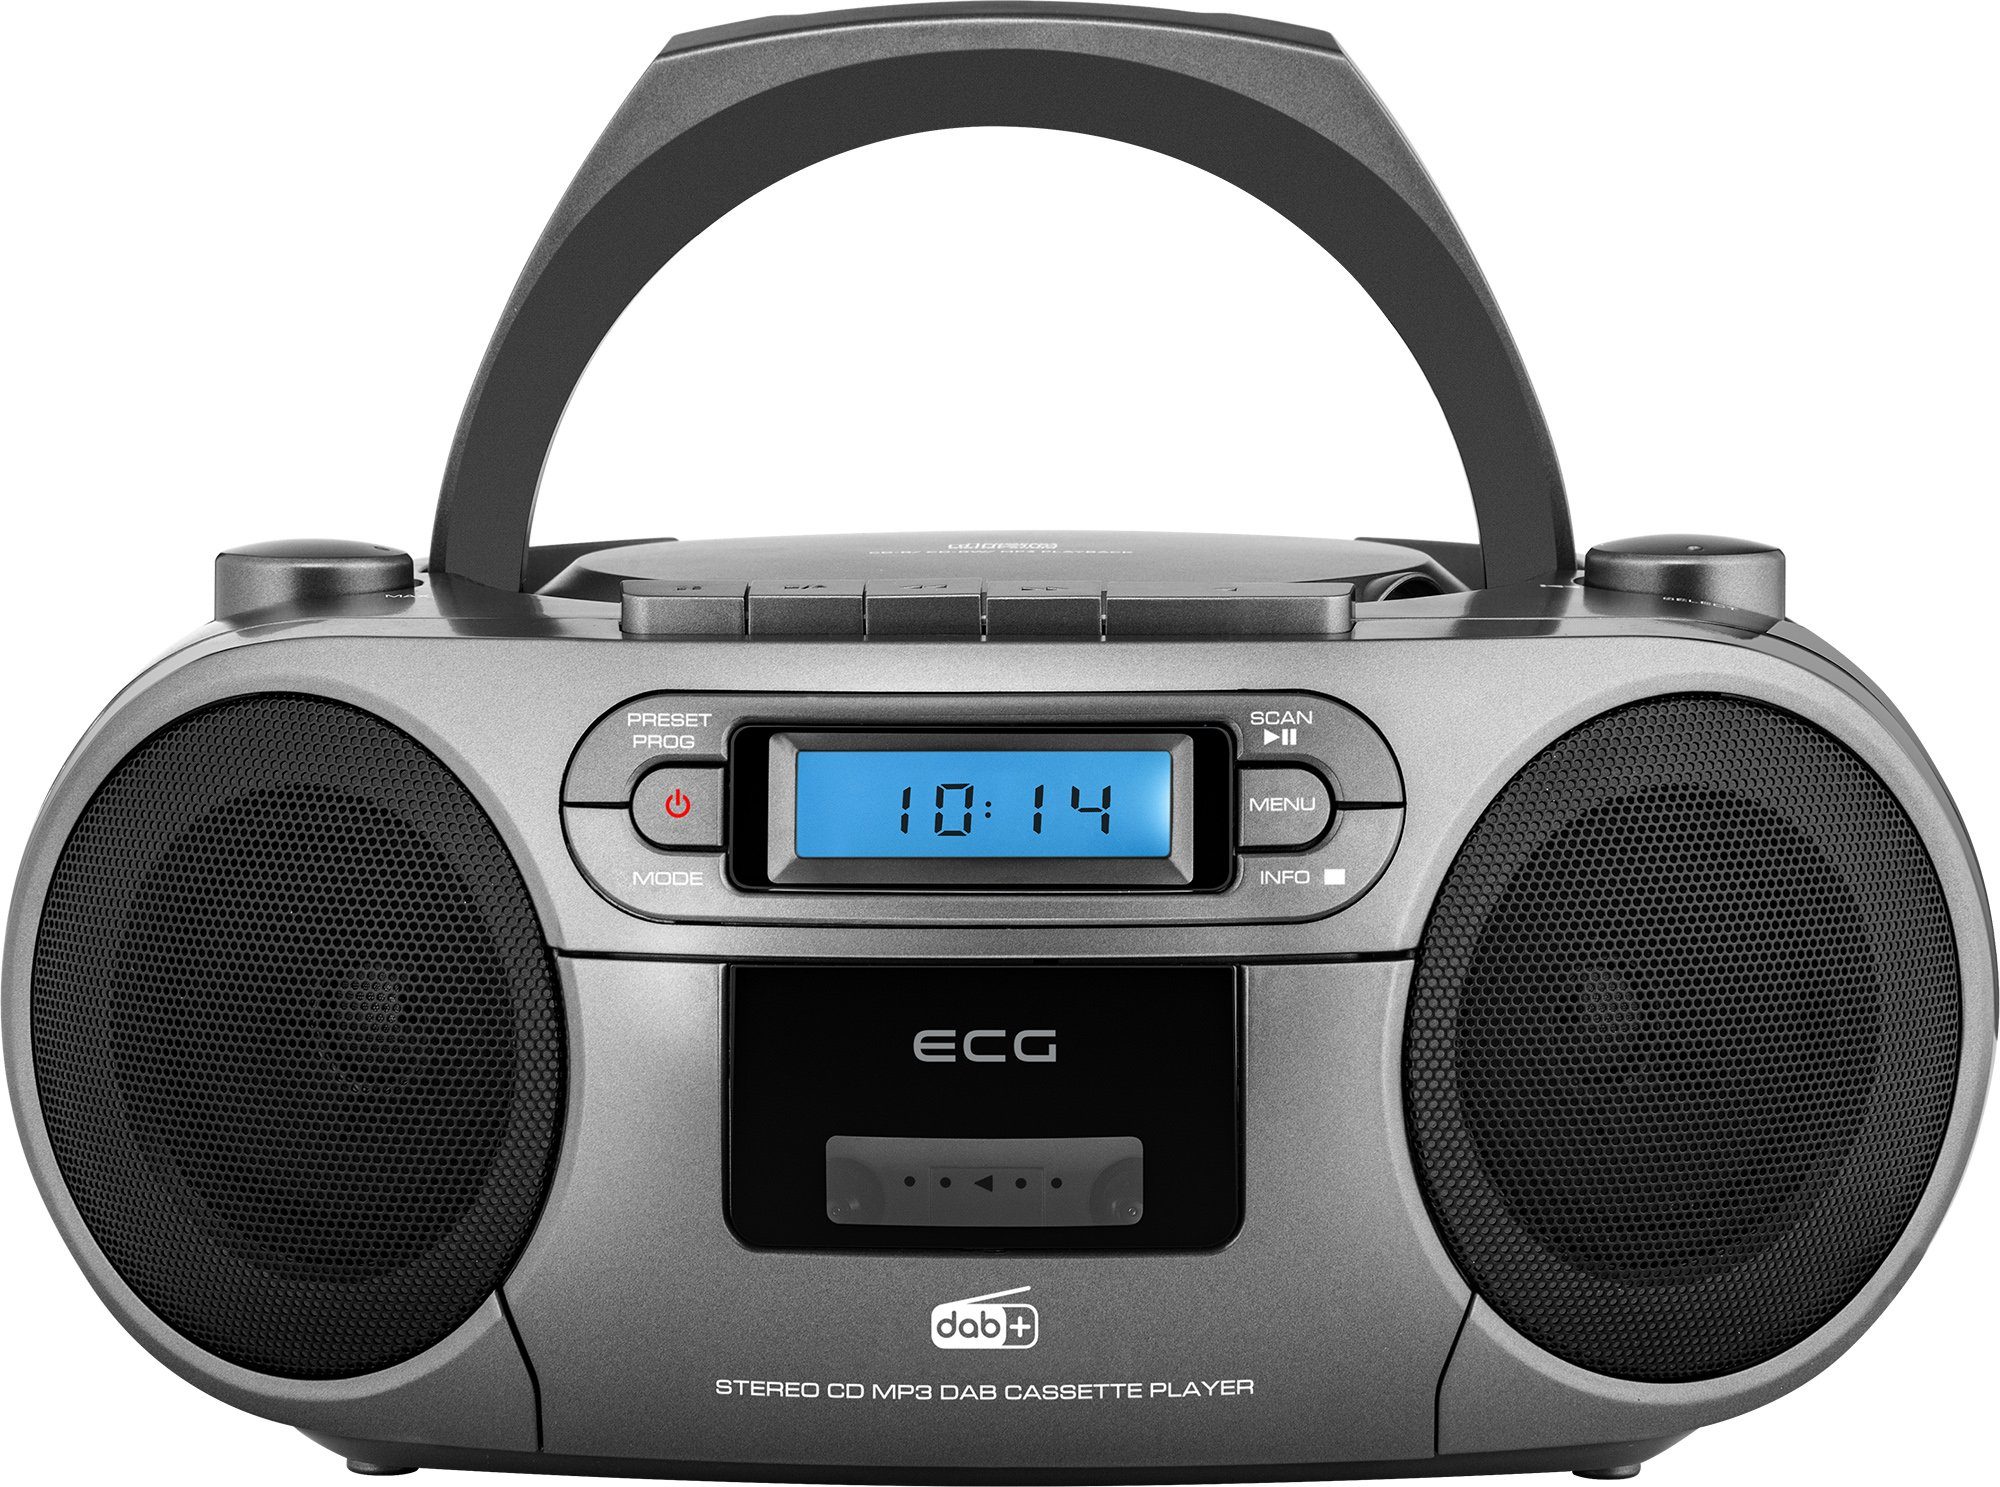 ECG CDR 999 Digitalradio (DAB) (Digitalradio (DAB), FM Digital Tuner, Kassettenplayer, CD-Player, MP3 / WMA-Musikwiedergabe vom USB-Laufwerk, 3,00 W, Abspielen von Kassetten, CDs und USB-Sticks, Digitalradio hören, Netz- und Batteriebetrieb)